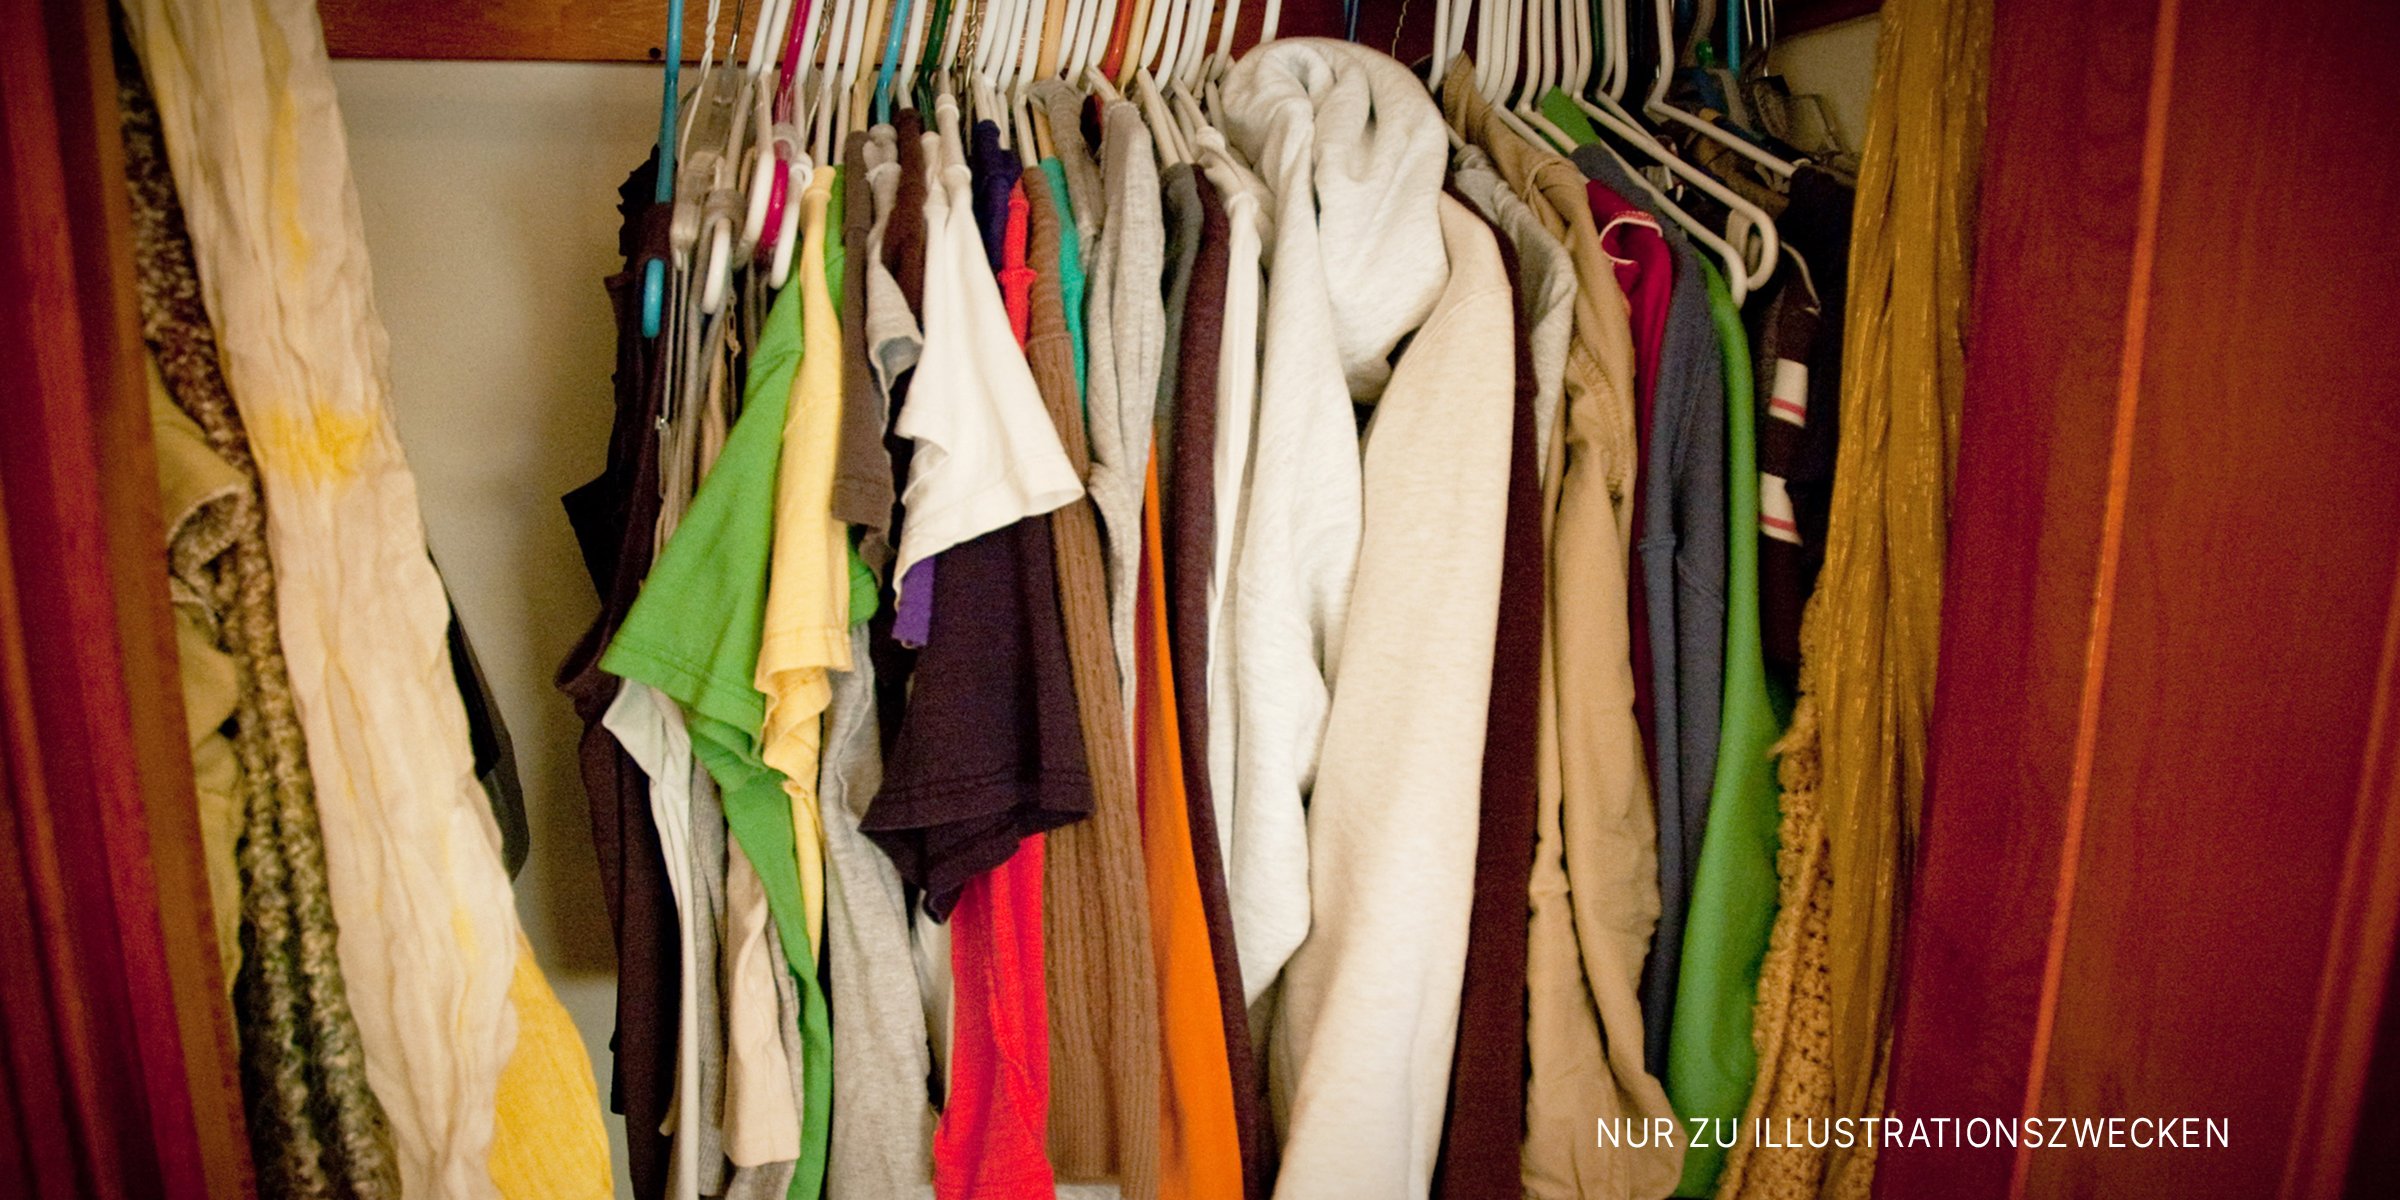 Kleider hängen in einem Schrank | Quelle: Shutterstock Flickr / reubenaingber (CC BY 2.0) Flickr / libraryrachel (CC BY 2.0)